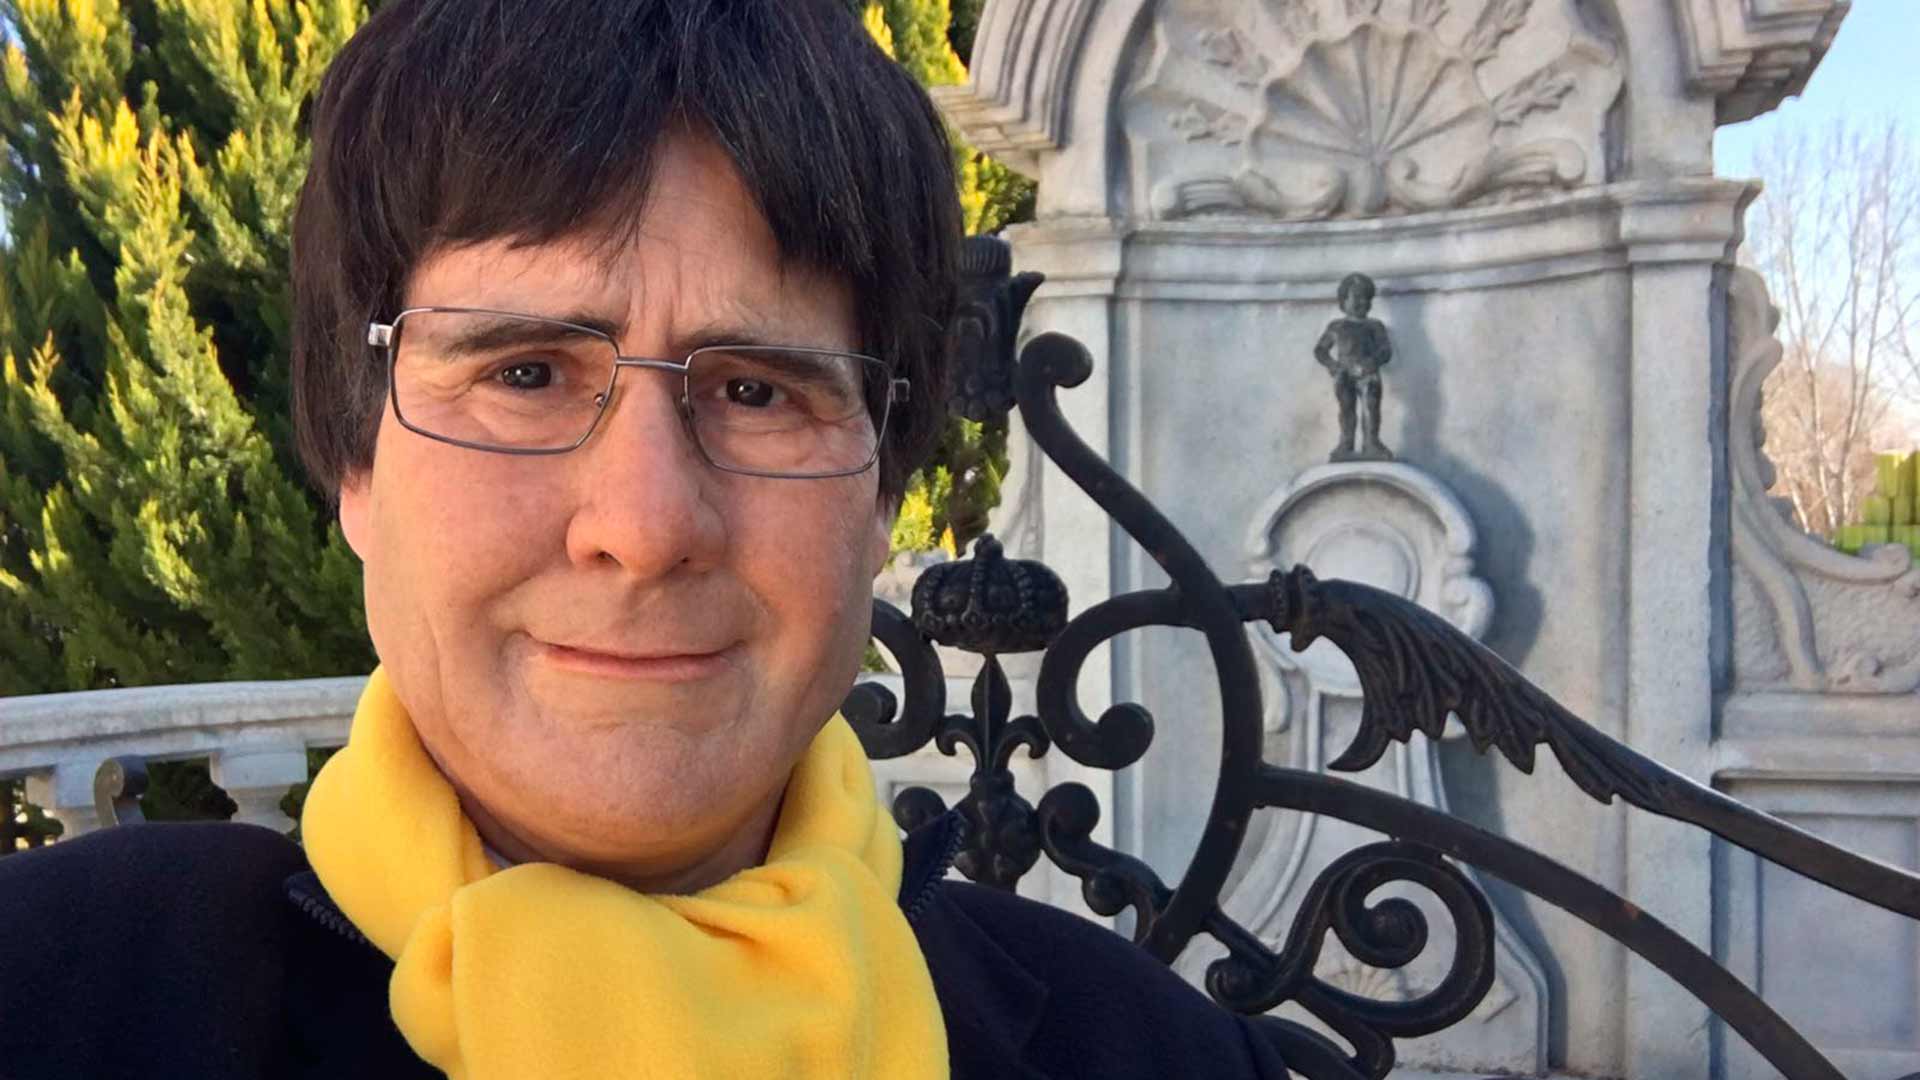 Un vecino de Madrid alerta al 091 al confundir a Joaquín Reyes con Puigdemont